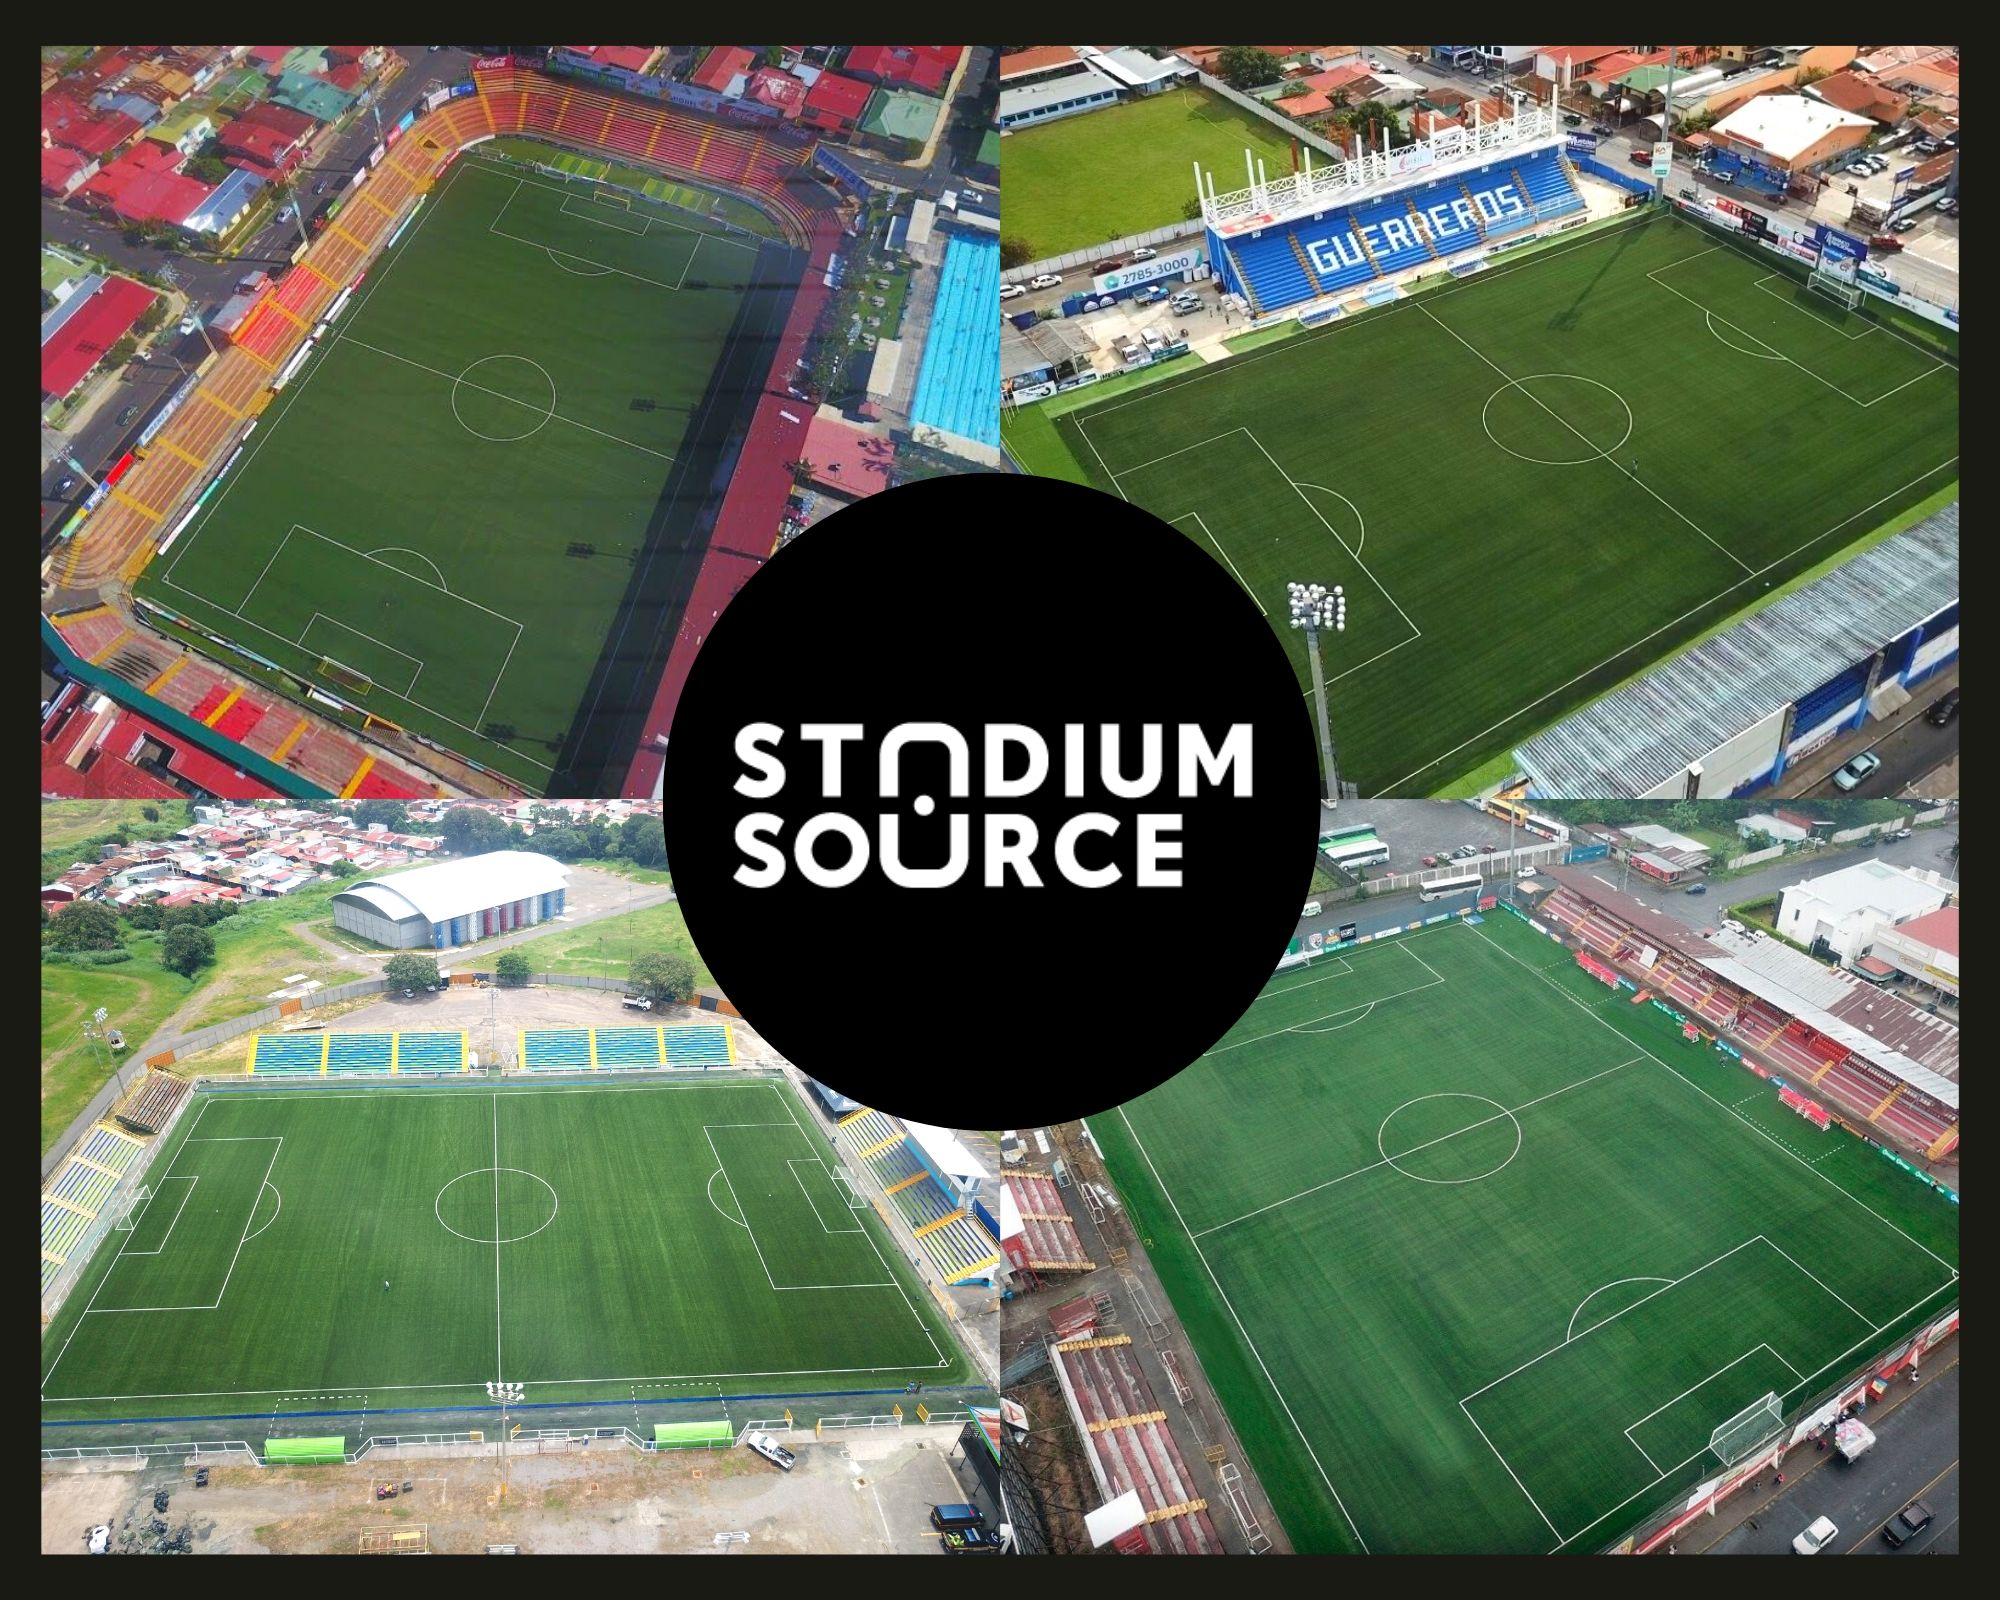 cesped-sintetico-deportivo-estadios-costa-rica-primera-division-futbol-stadium-source